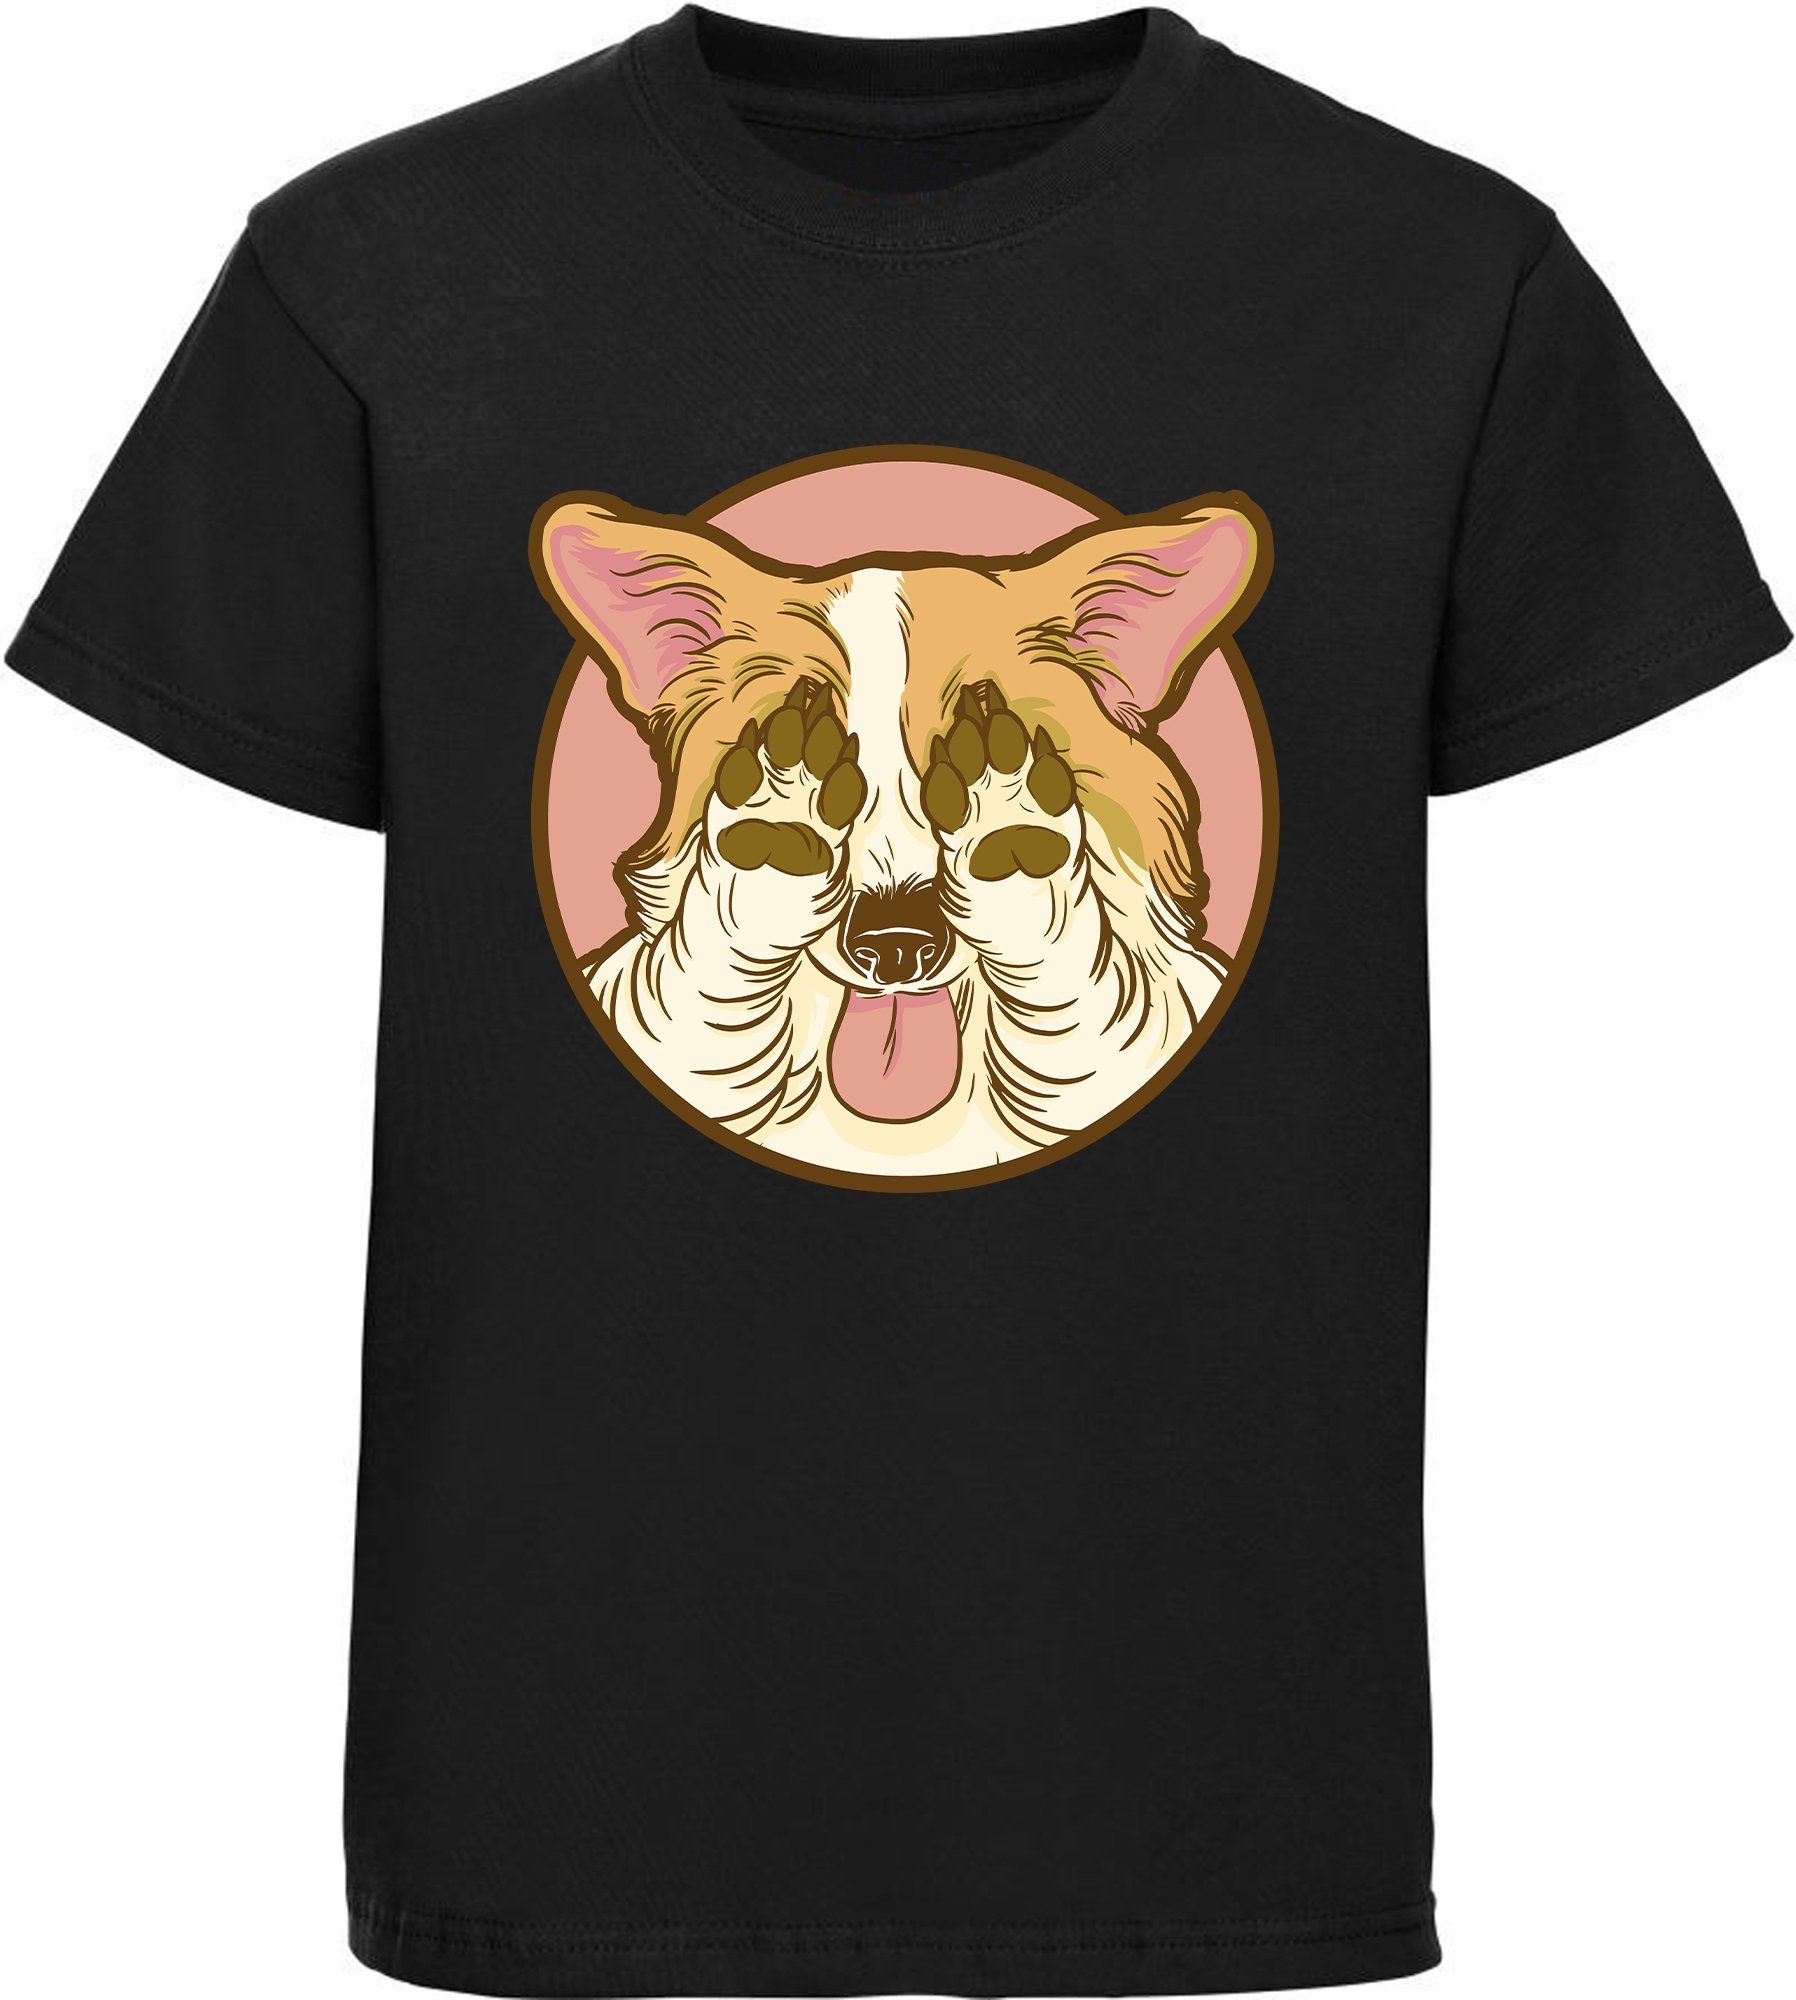 MyDesign24 Print-Shirt bedrucktes Kinder Hunde zu Aufdruck, mit Baumwollshirt schwarz der Corgi i226 hält seine T-Shirt - Augen